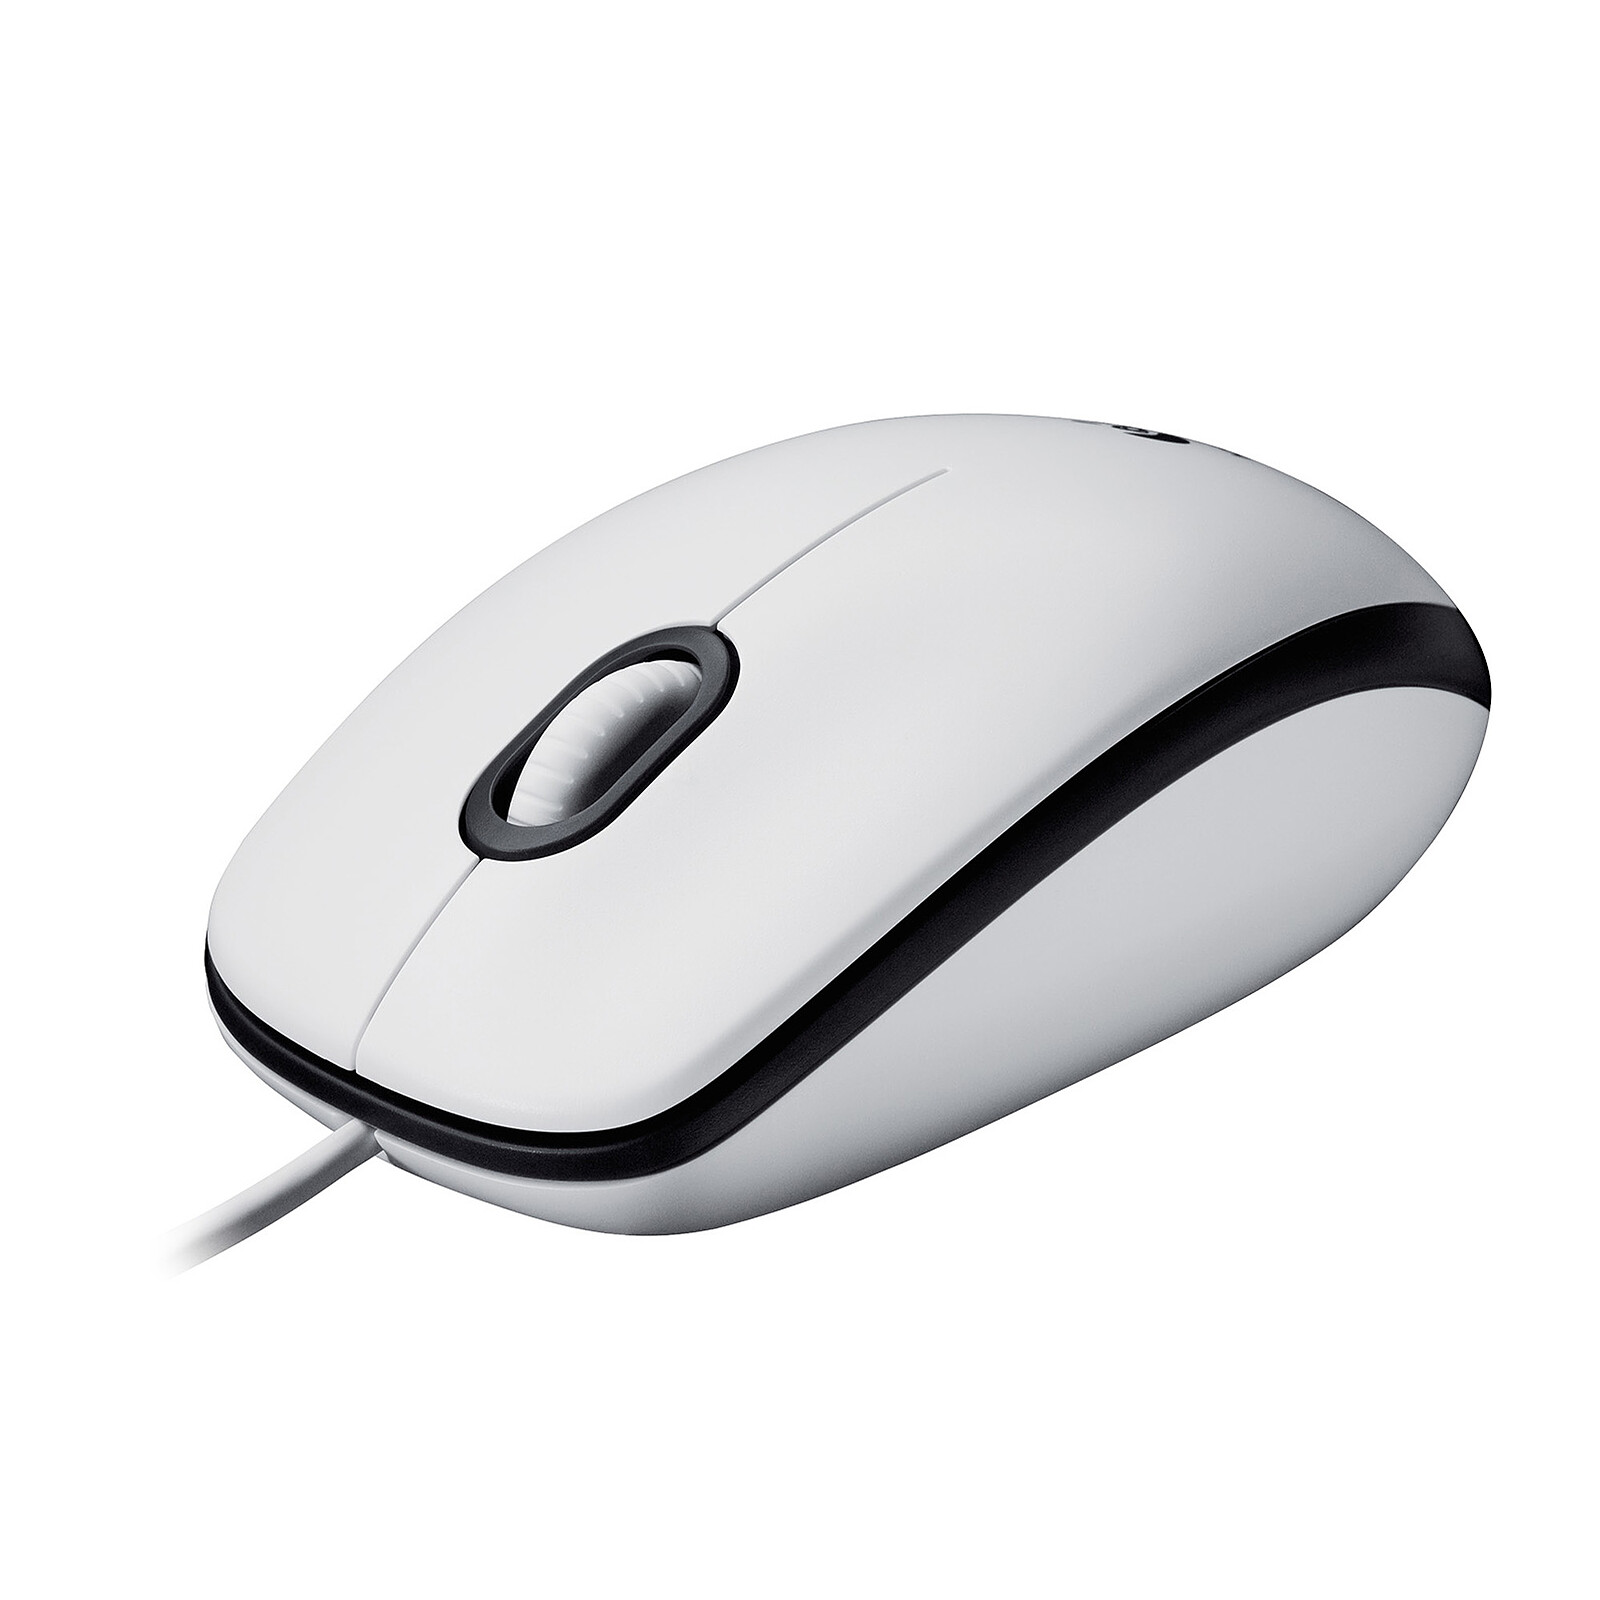 Logitech Mouse M100 (Blanc) - Souris PC - Garantie 3 ans LDLC